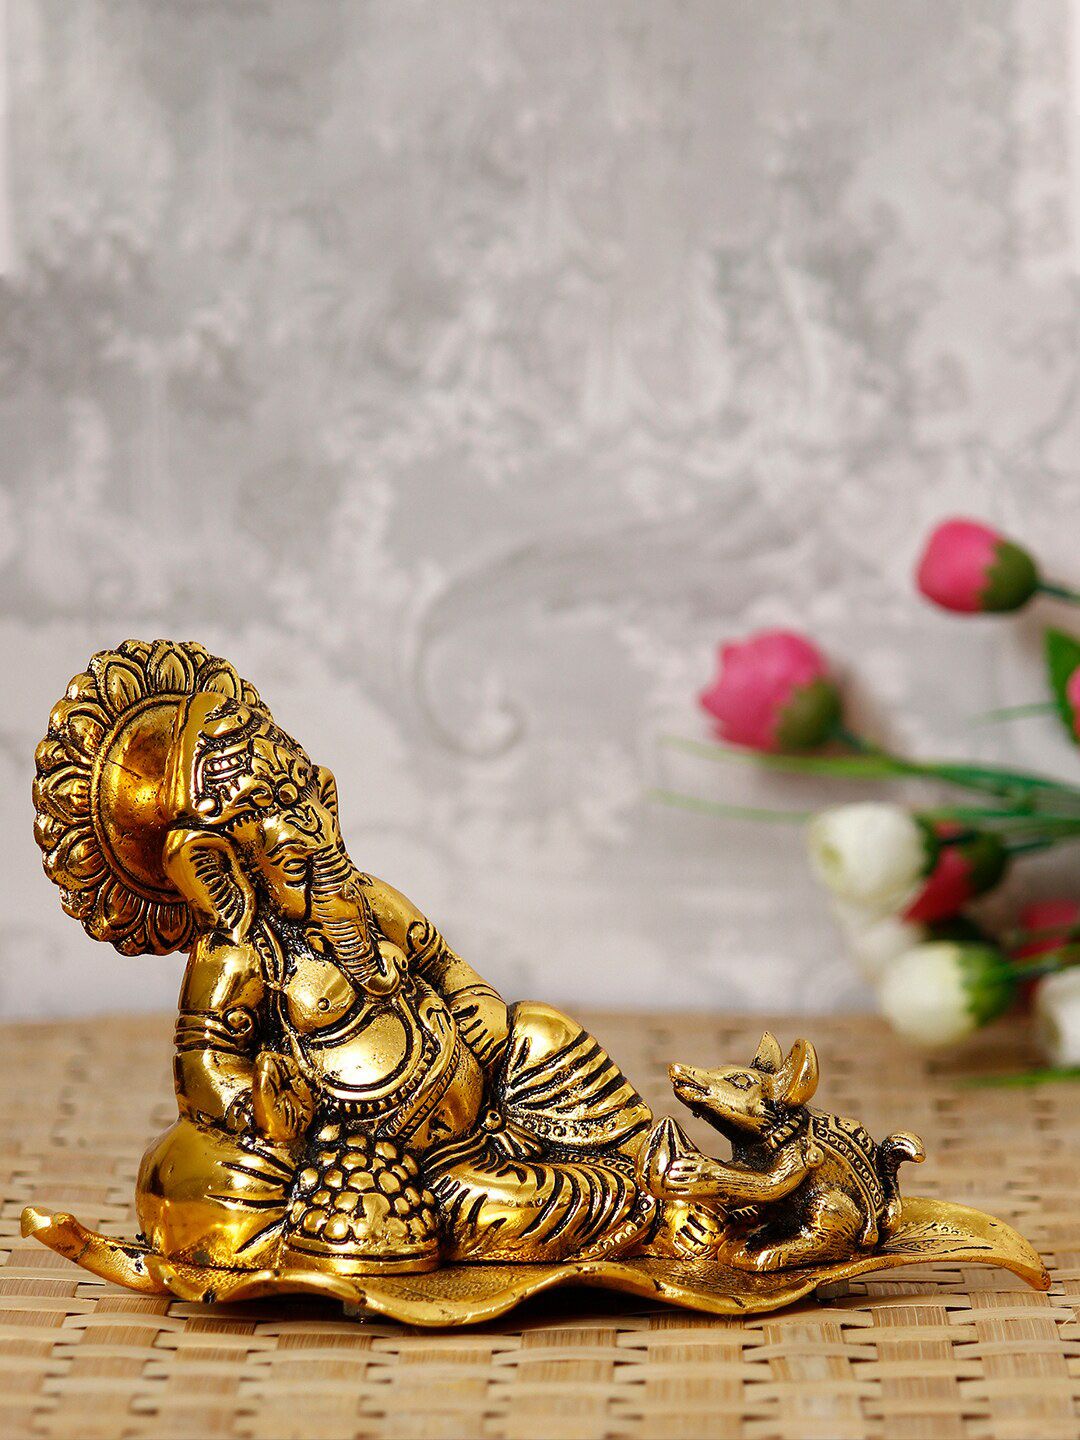 eCraftIndia Gold-Toned Resting Ganesha With Mushak Decorative Showpiece Price in India